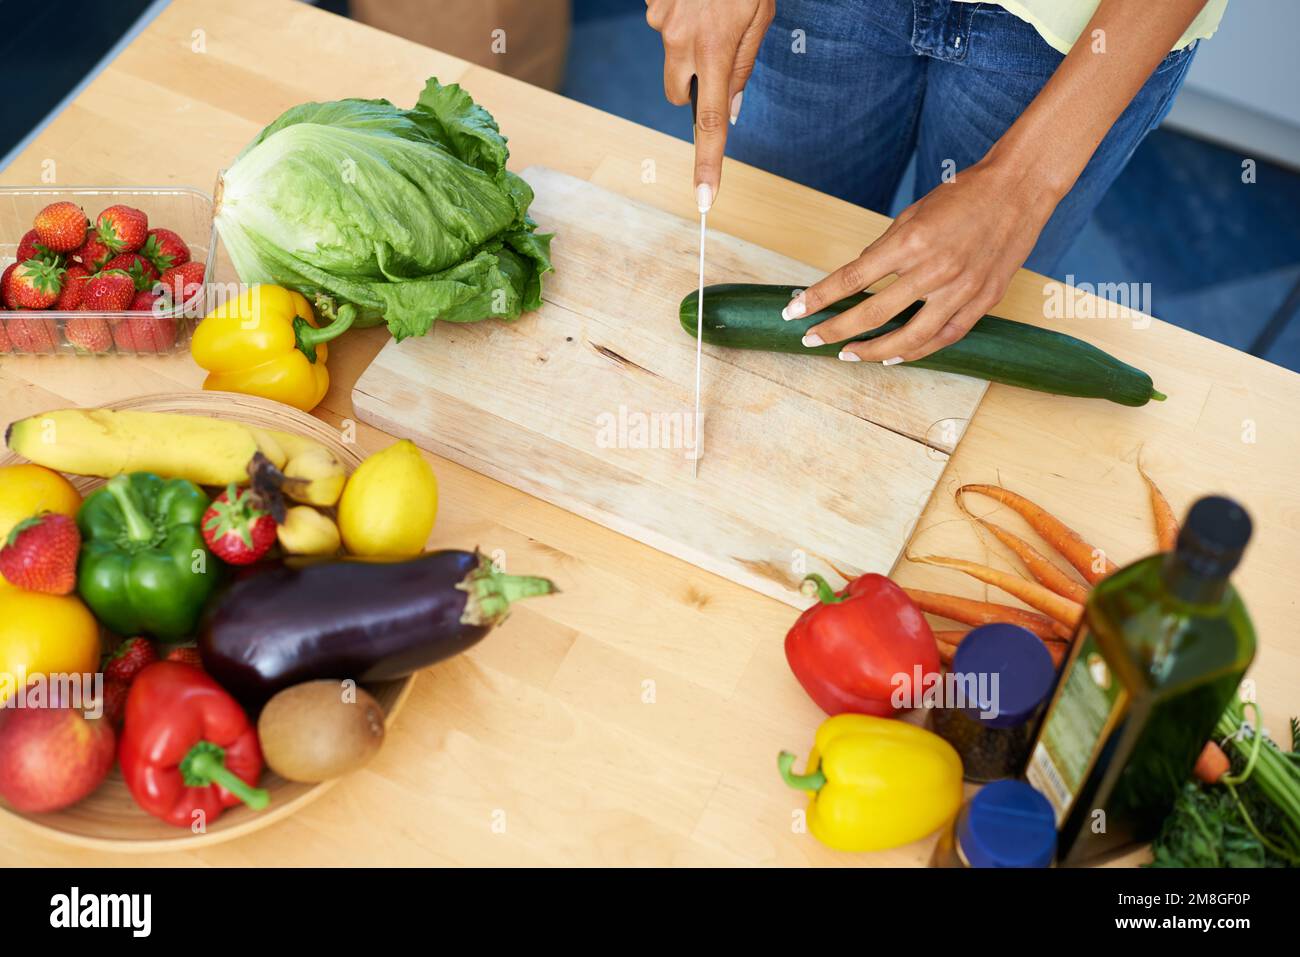 Der Anfang von etwas gesundem. Eine junge Frau schneidet Gemüse in einer Küche. Stockfoto